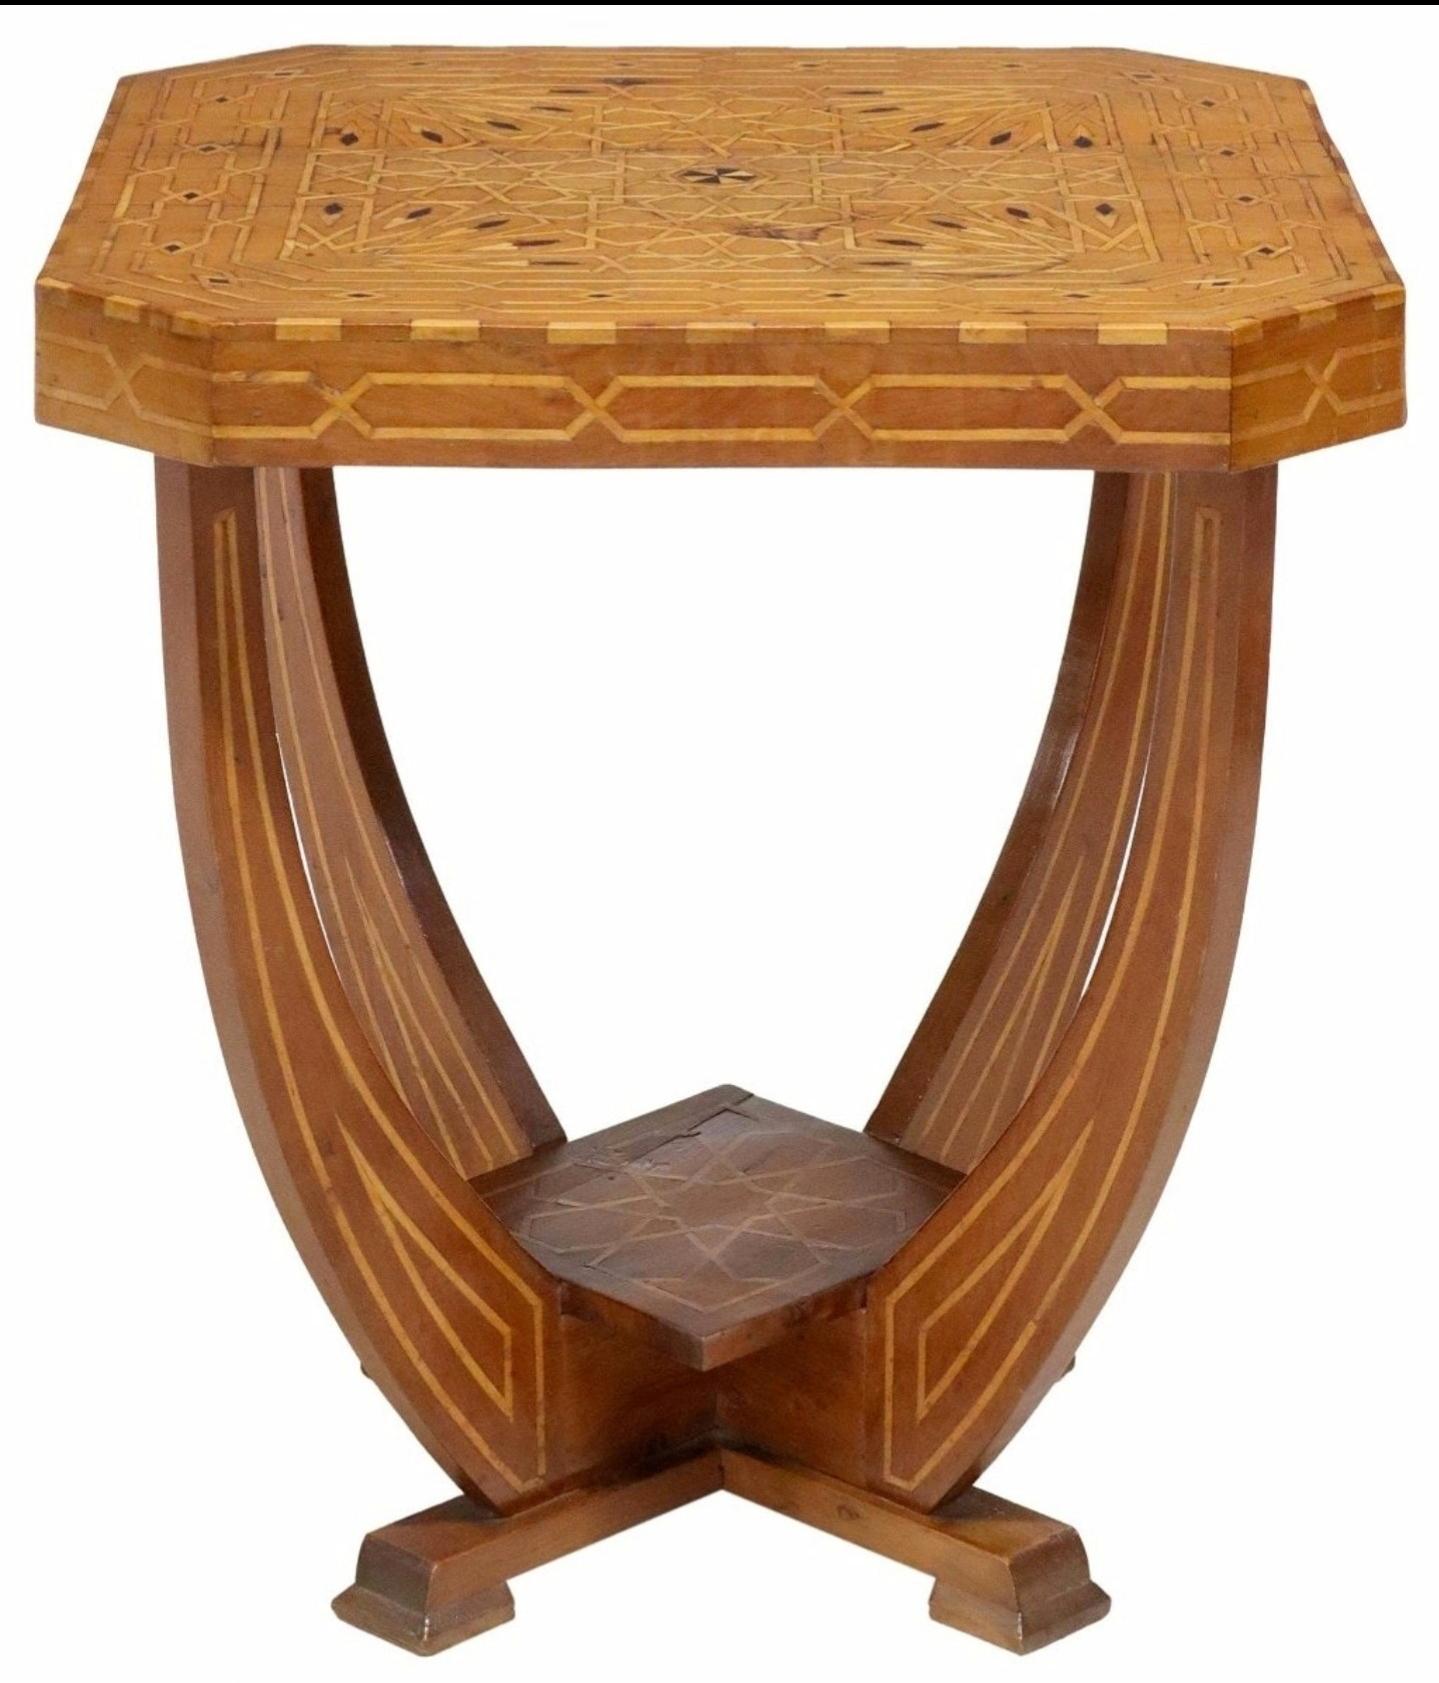 Ein prächtiger italienischer Tisch mit aufwändigen Intarsien aus der Zeit des Art déco Moderne, um 1930 

Fein handgefertigt in Italien, wahrscheinlich in der Region Sorrento - Neapel in Süditalien, mit einem zweistöckigen Design aus Nussbaum mit